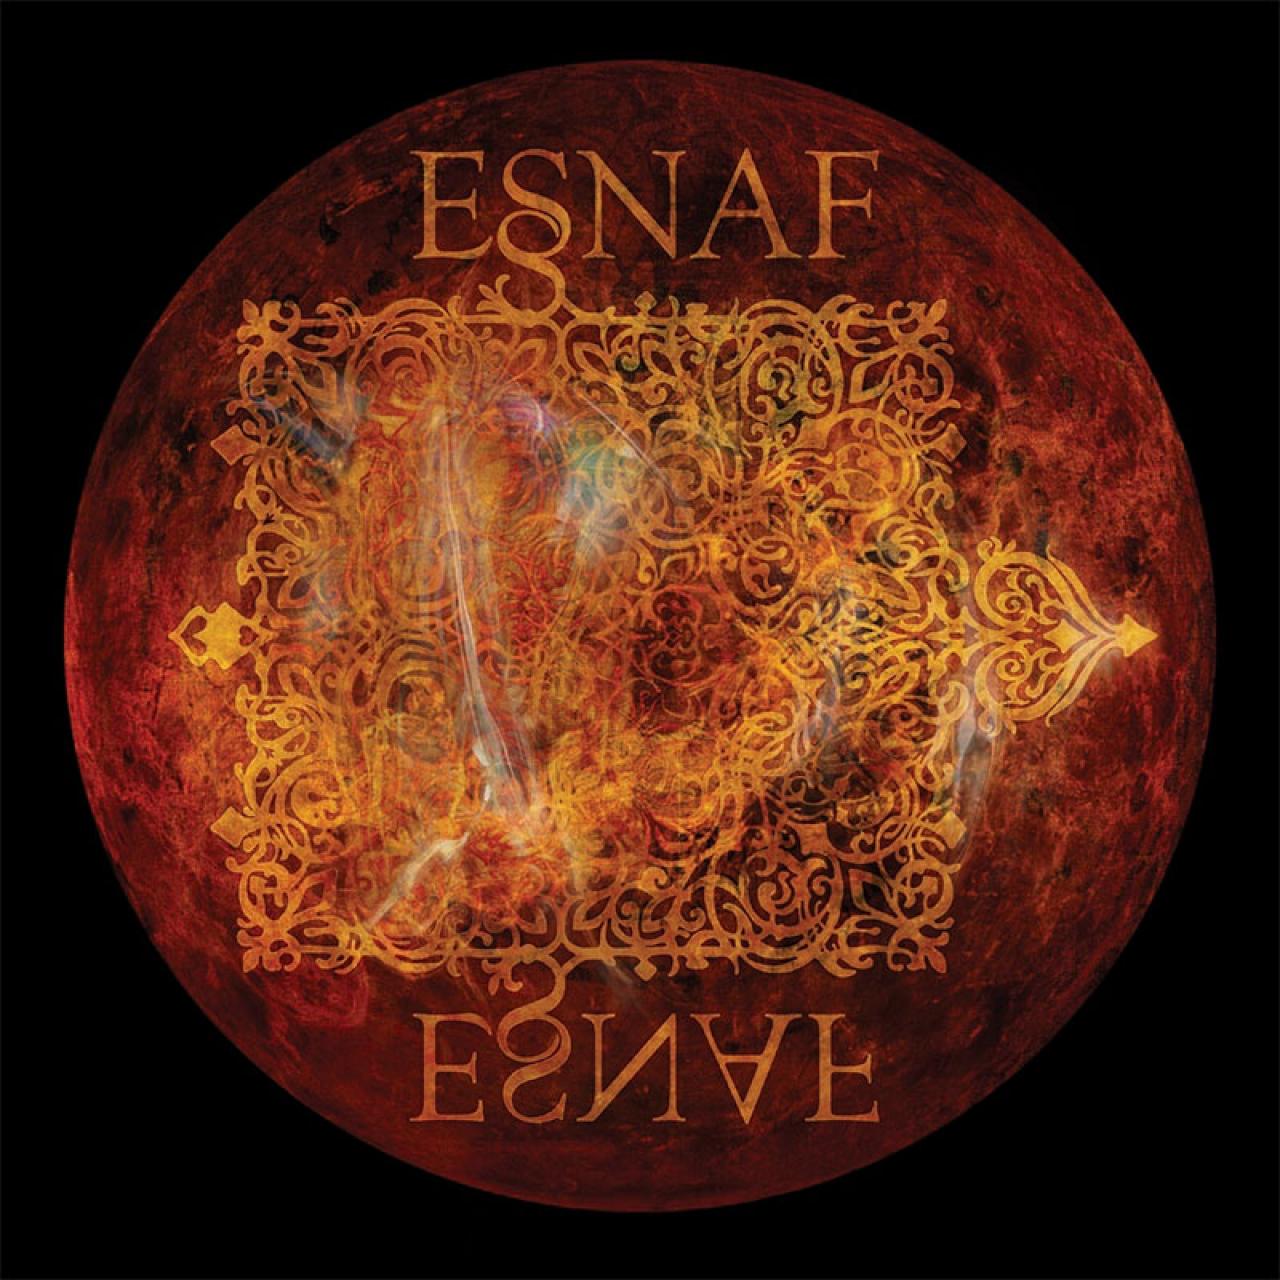 ESNAF: Projekt vrhunskih glazbenika - ESNAF: projekt vrhunskih glazbenika koji kroz istoimeni album tradicijsku glazbu prenose u nove sfere